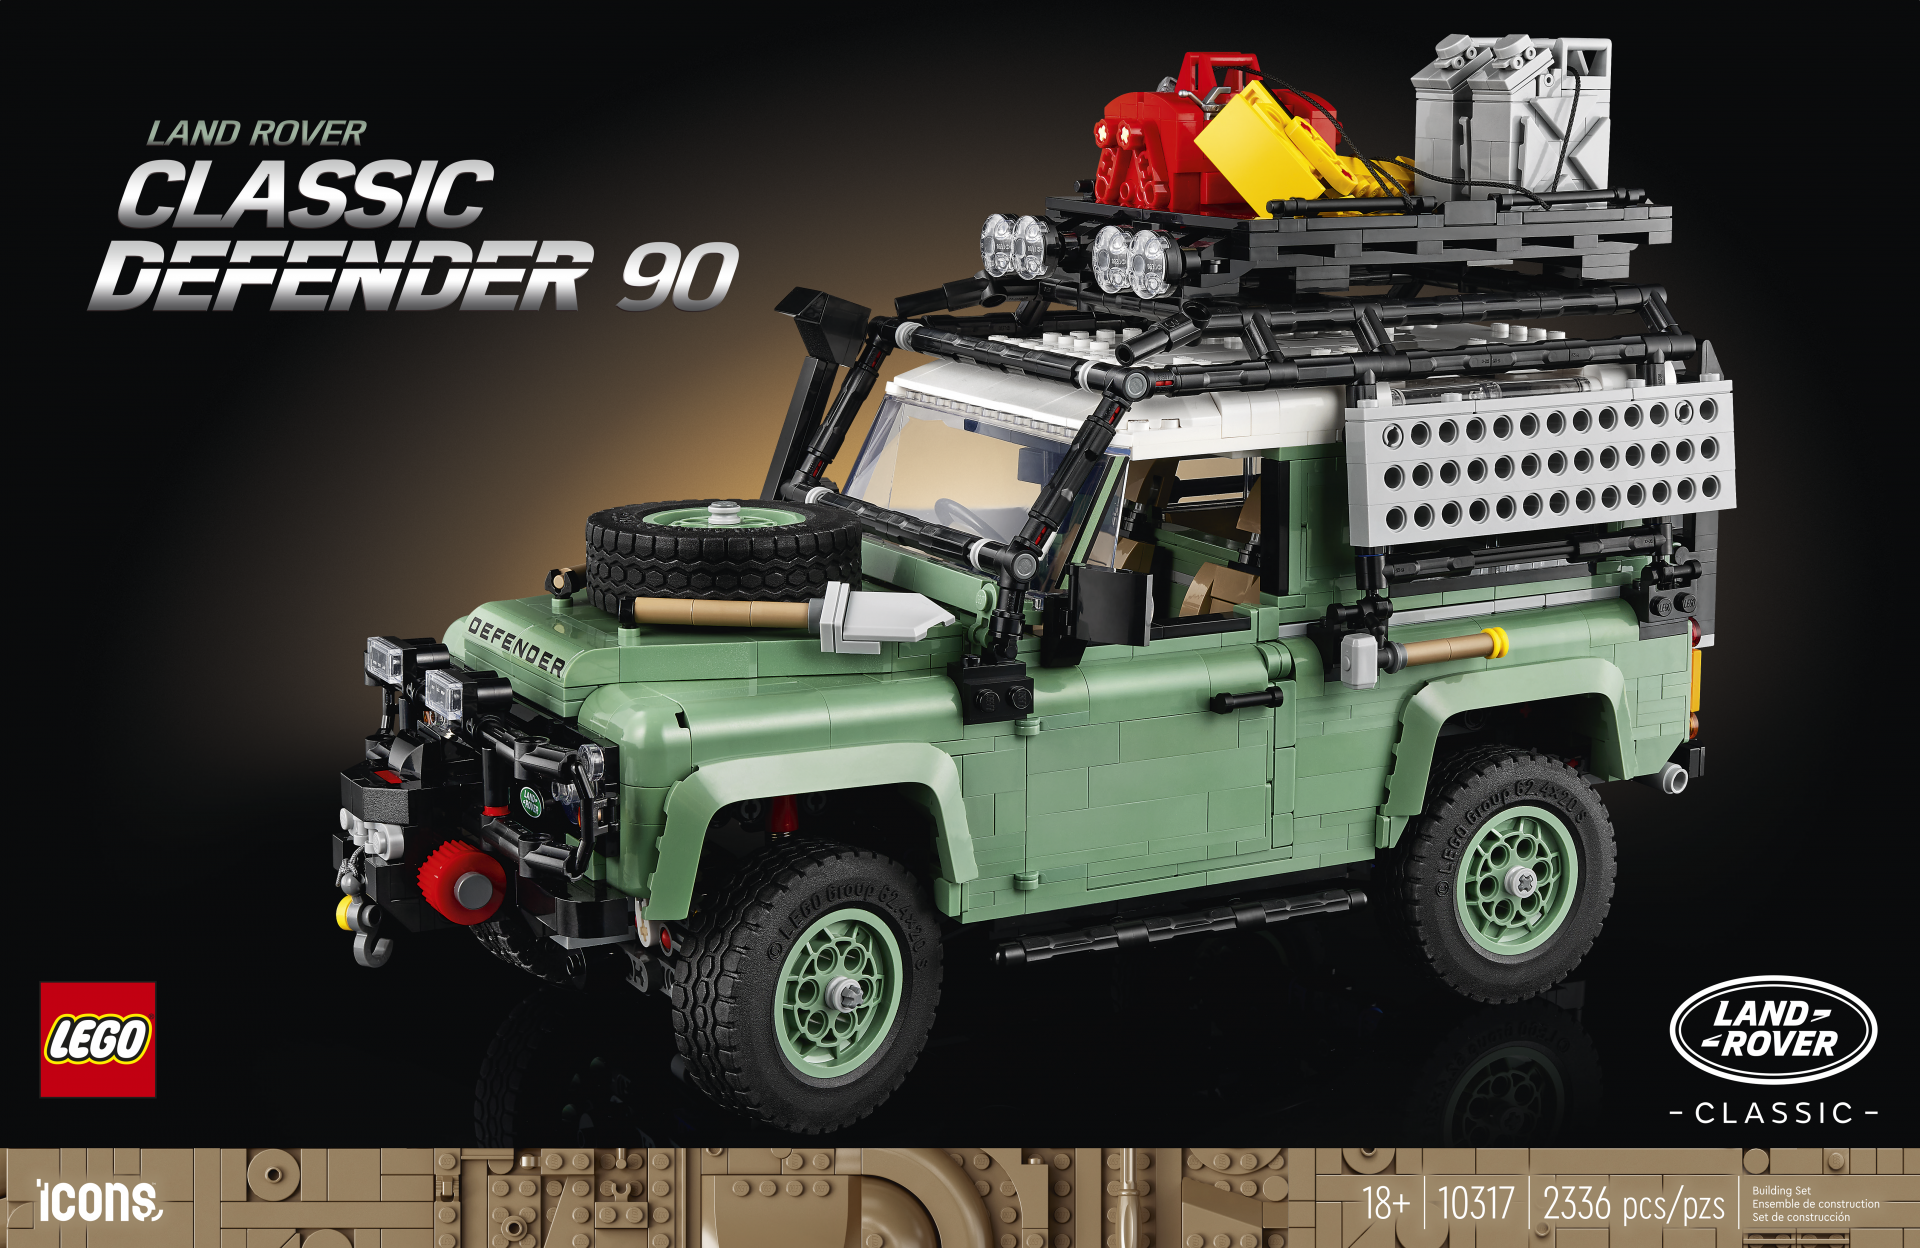 Soepel Centrum Zwerver Lego brengt bouwdoos uit van klassieke Land Rover Defender | AutoGids